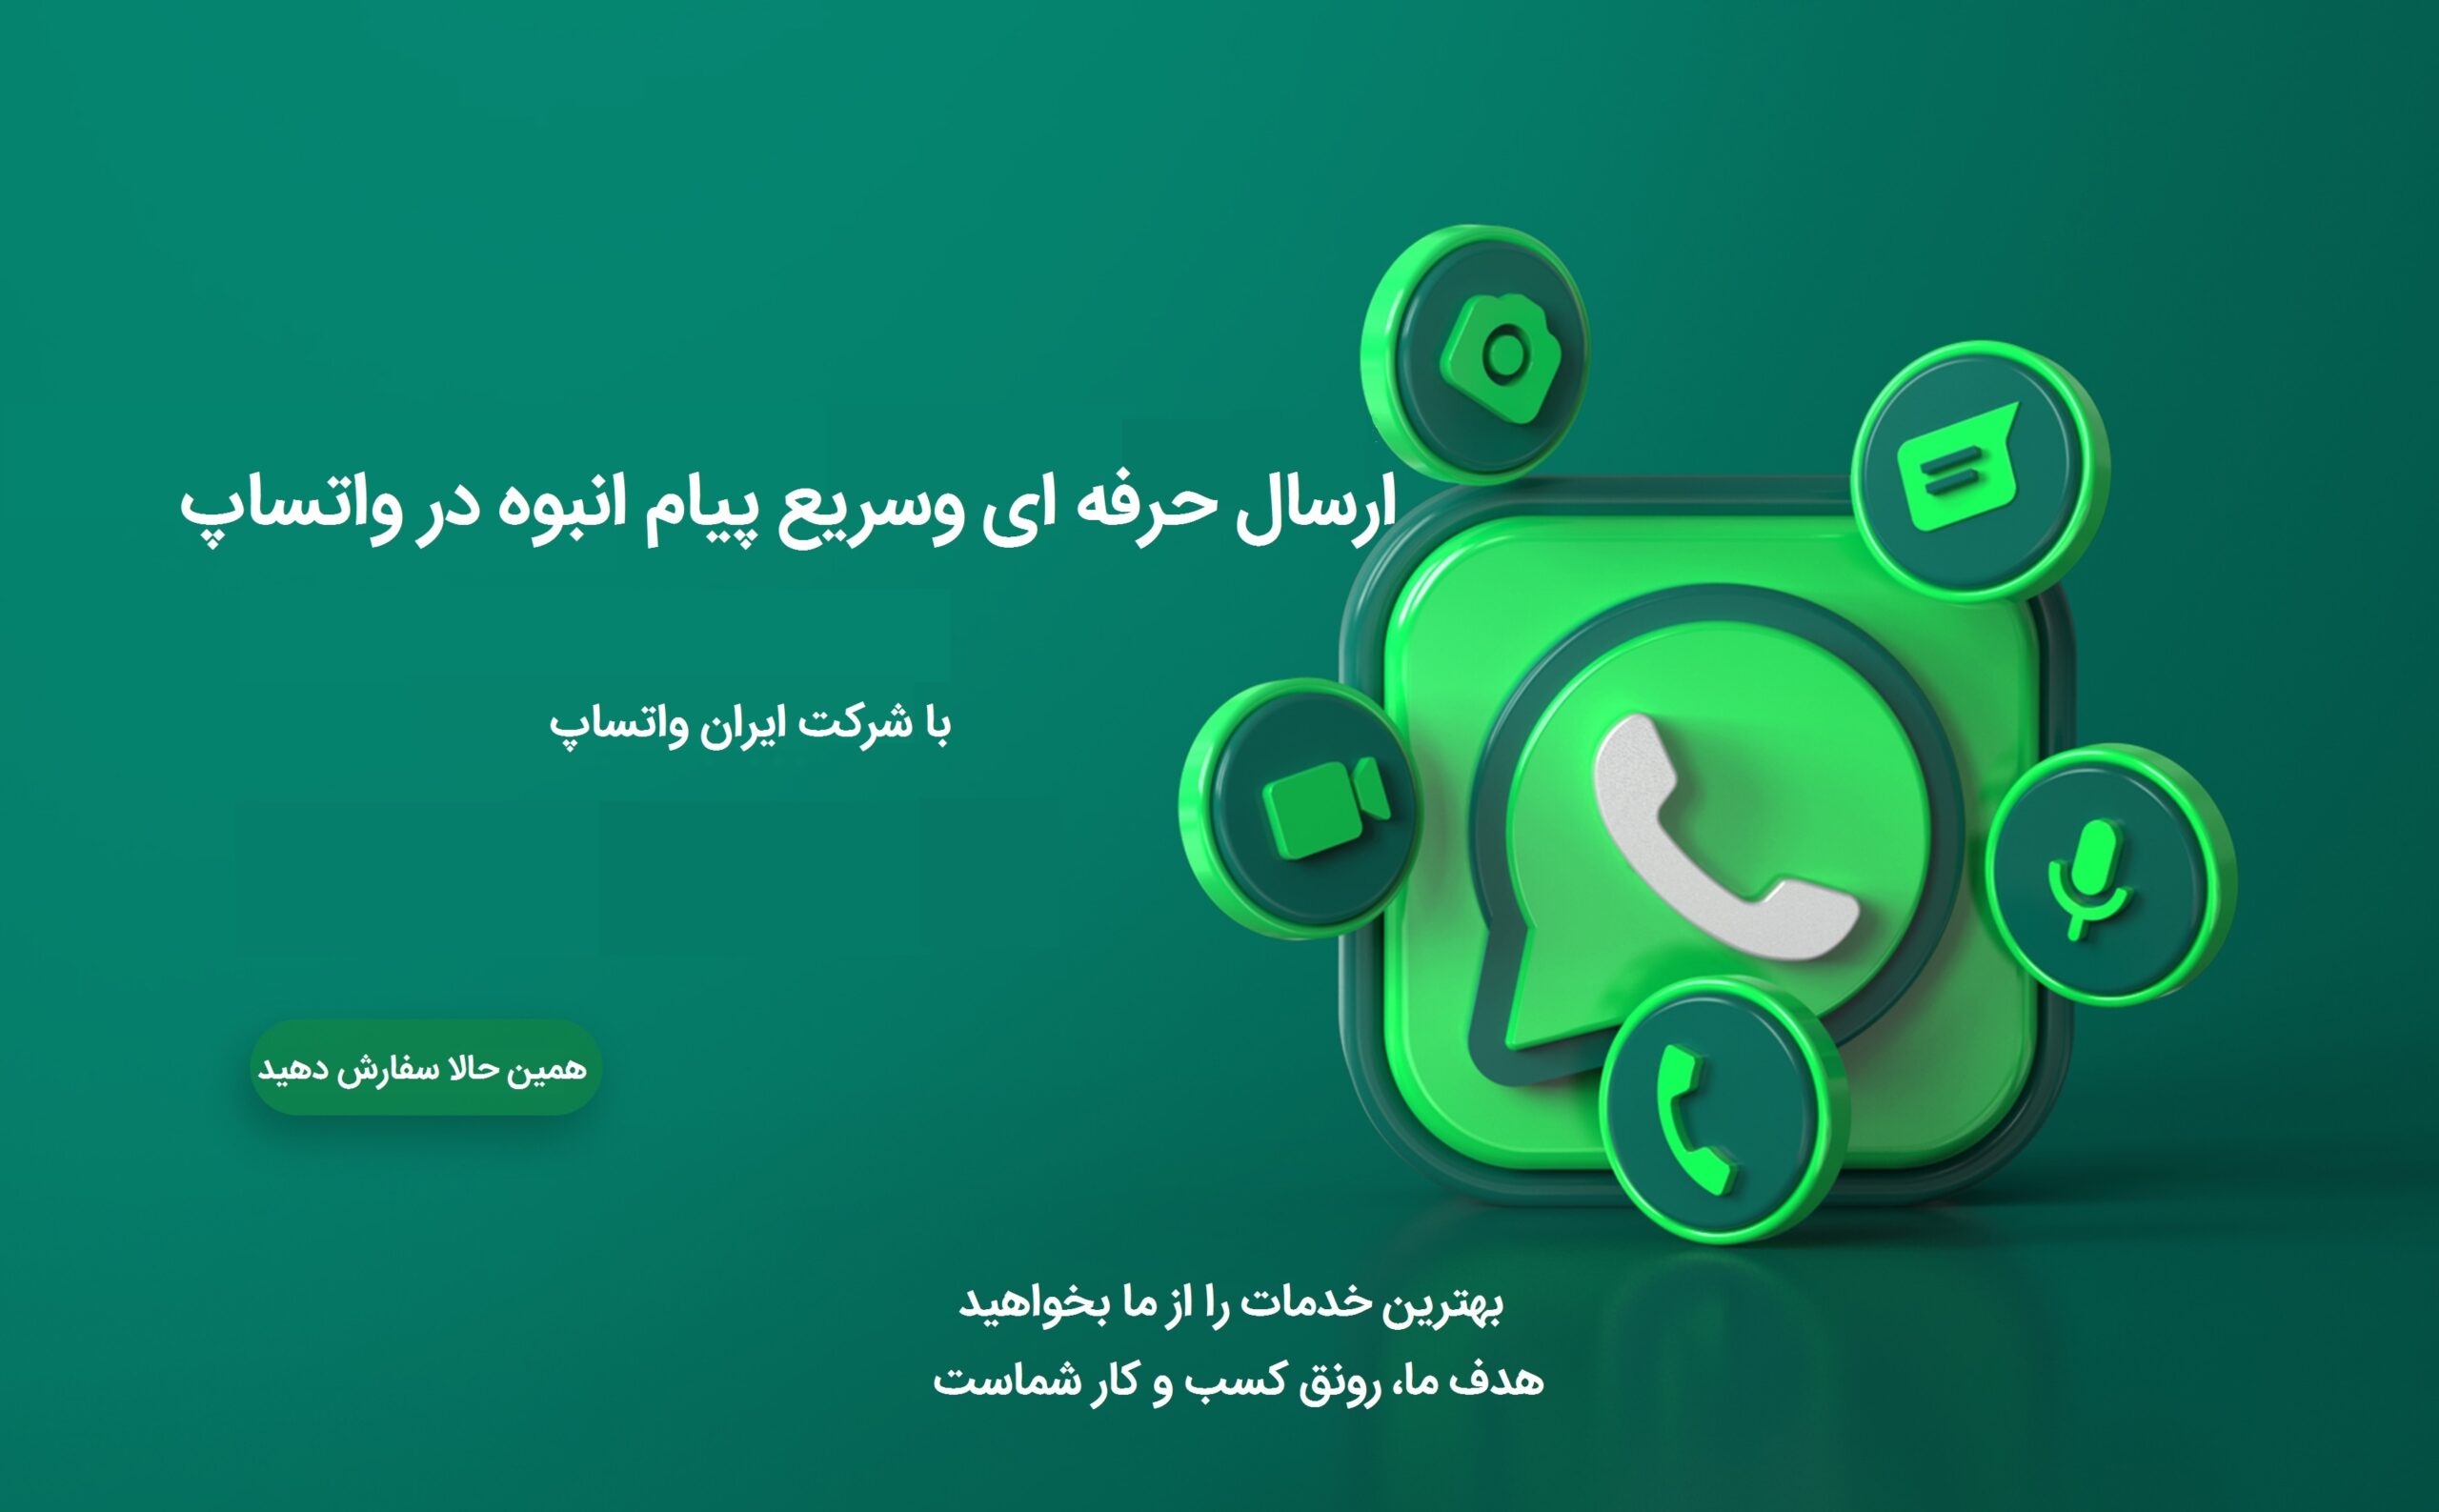 ارسال انبوه پیام در واتساپ -برنامه whatsapp sender